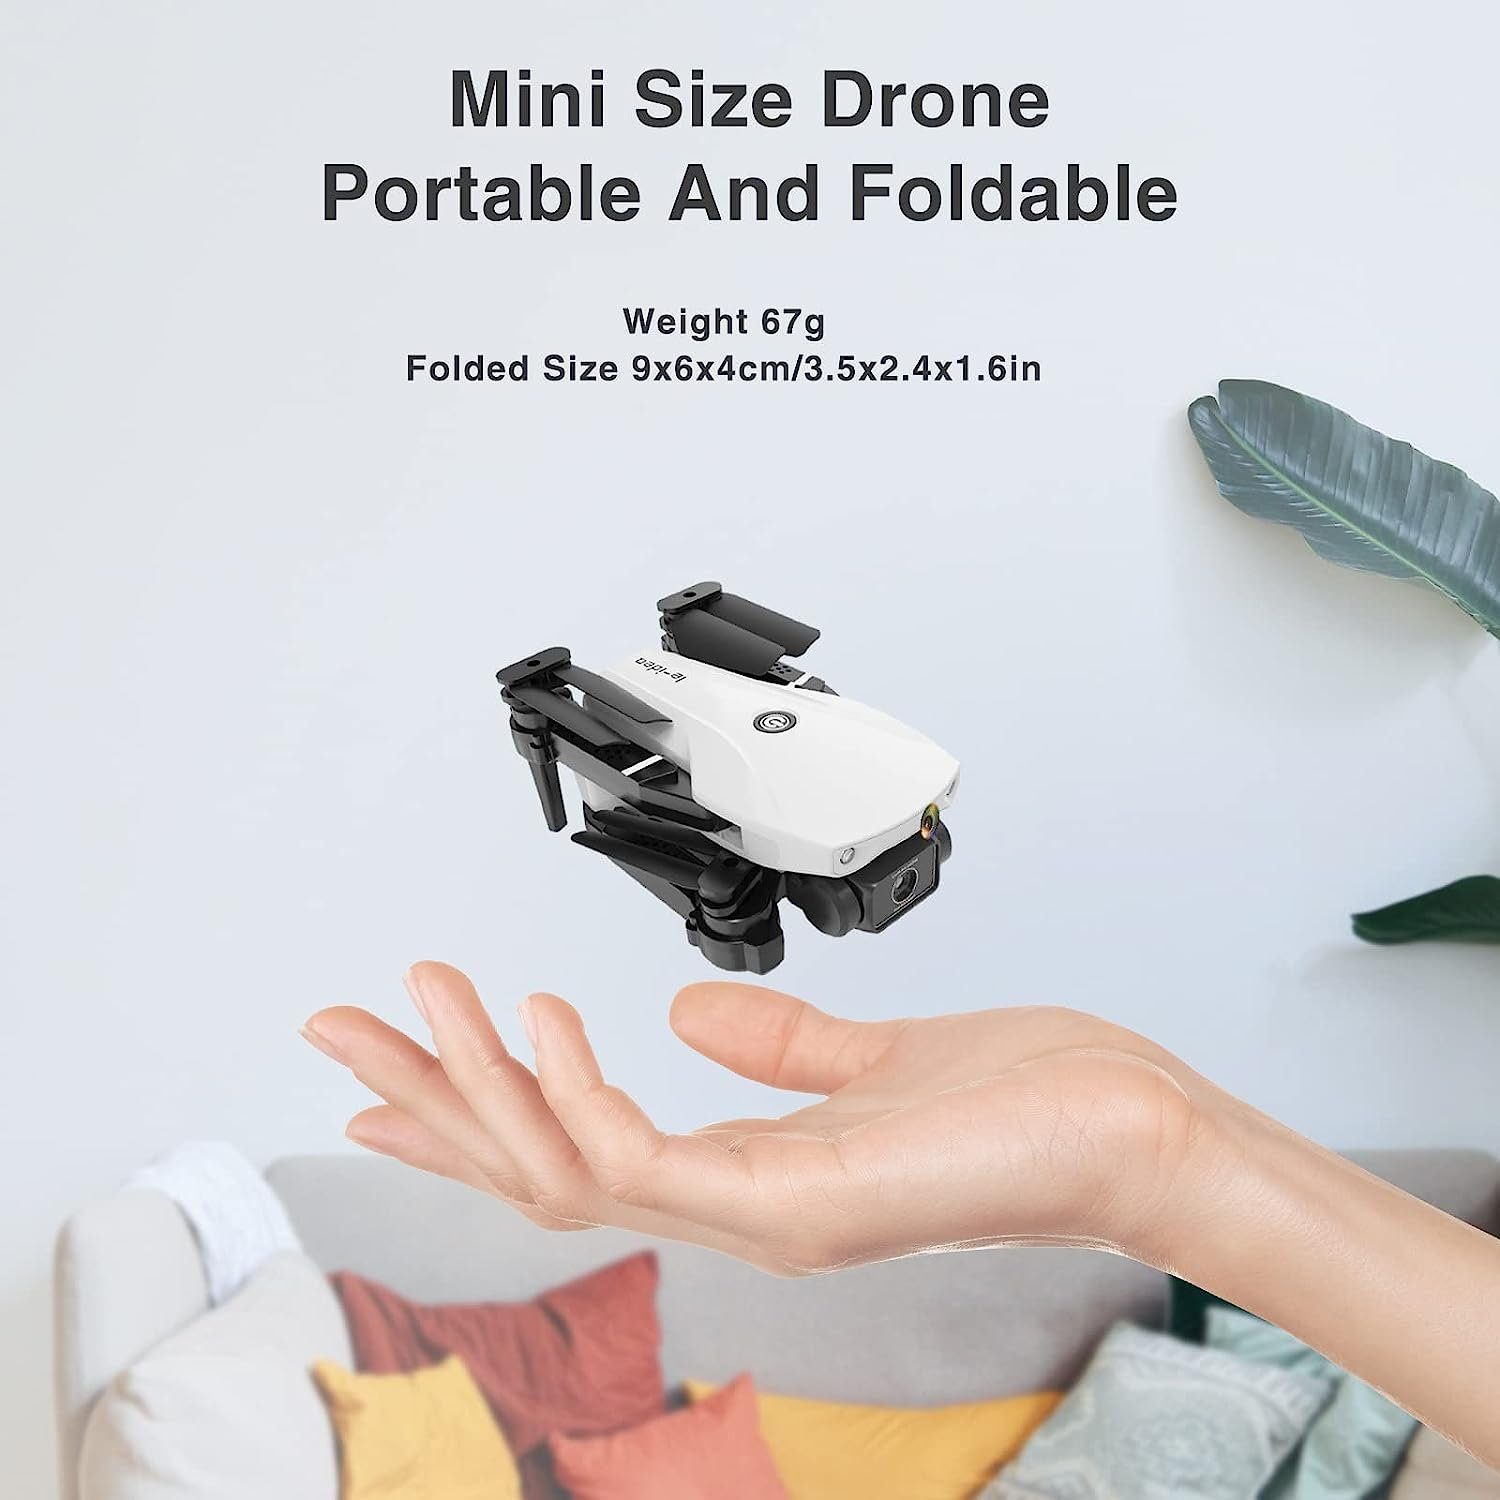 Geschenk Drohne 3D Drohne Flip Halten, Höhenlage Mehr le-idea FPV für Quadrocopter Faltbare Jungen) Drone Mit für Anfänger, RC Kamera (720p, mit Mini